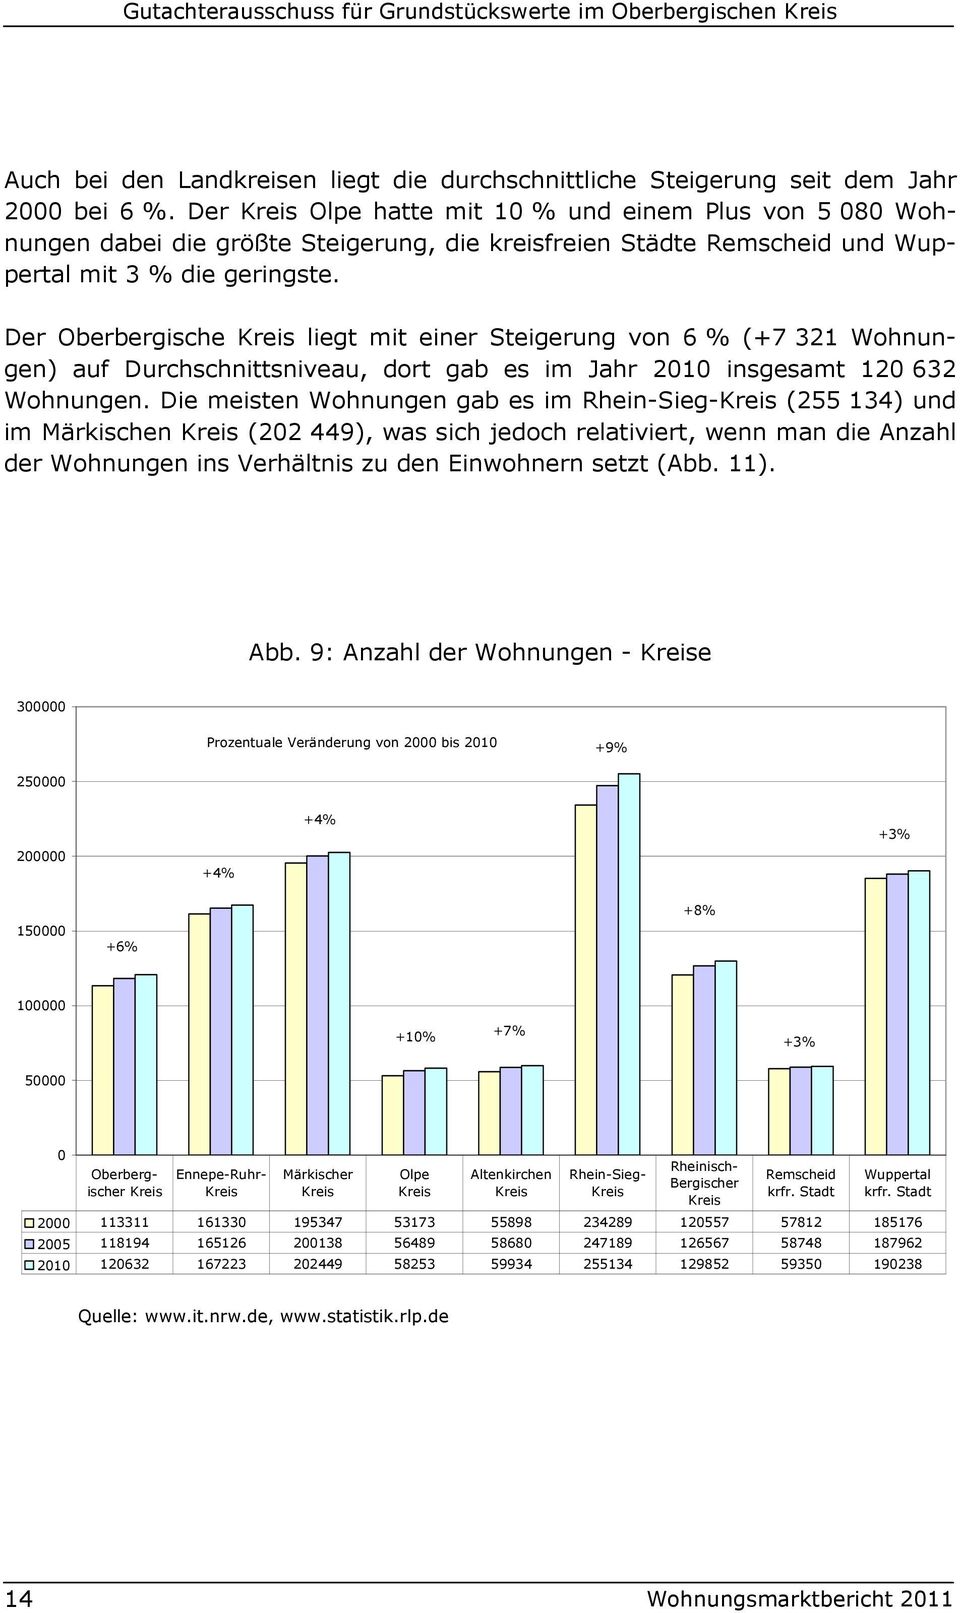 Der Oberbergische liegt mit einer Steigerung von 6 % (+7 321 Wohnungen) auf Durchschnittsniveau, dort gab es im Jahr 2010 insgesamt 120 632 Wohnungen.